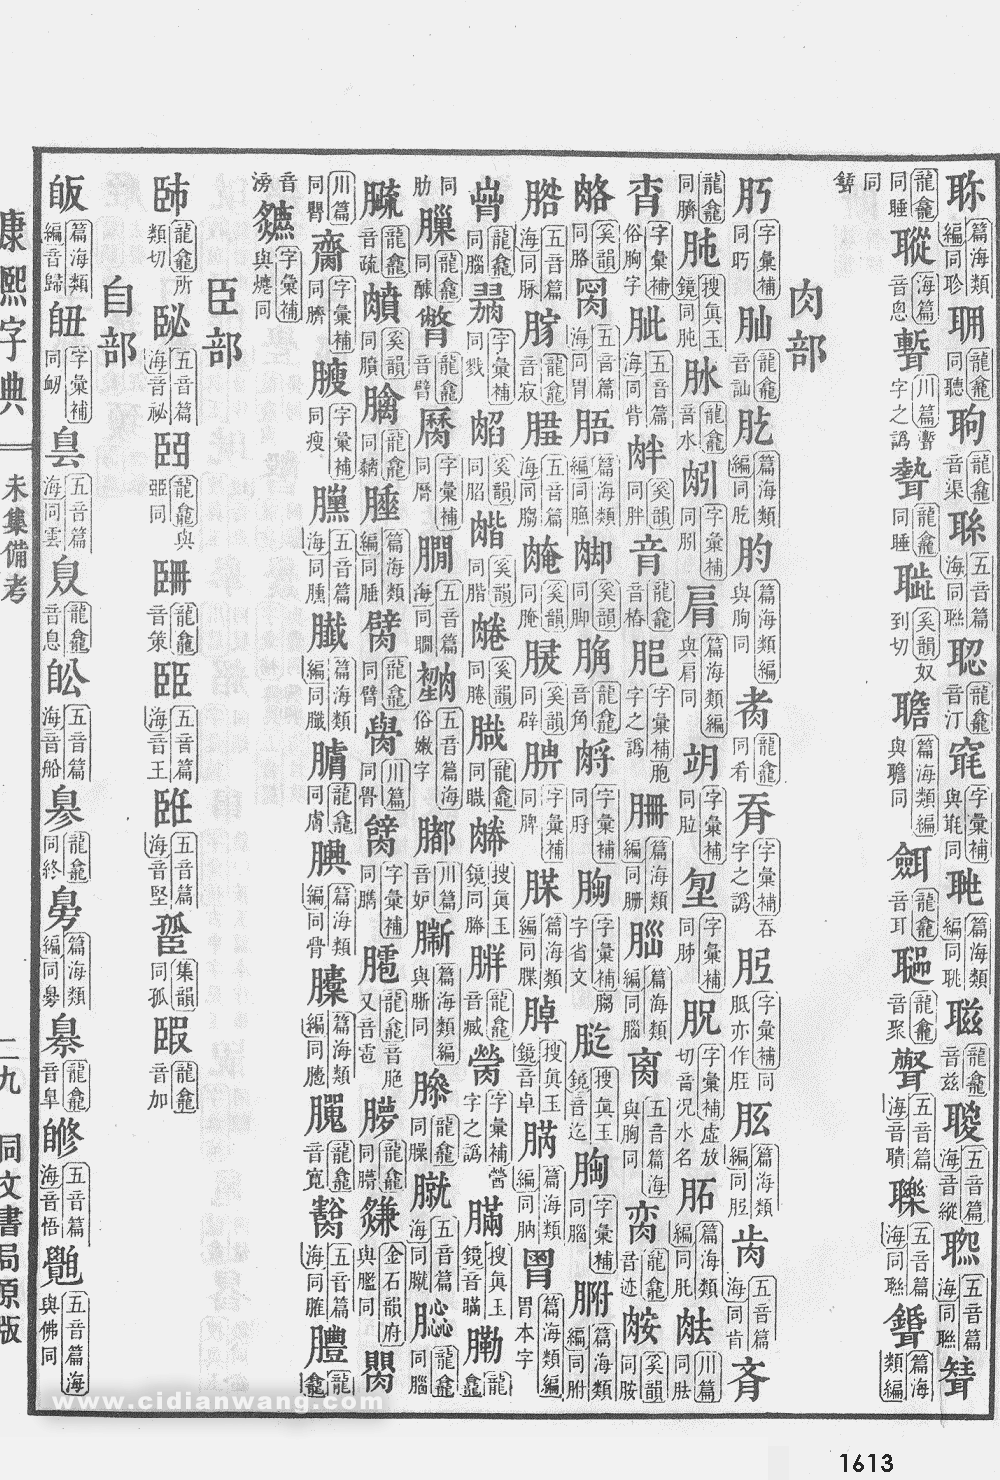 康熙字典掃描版第1613頁